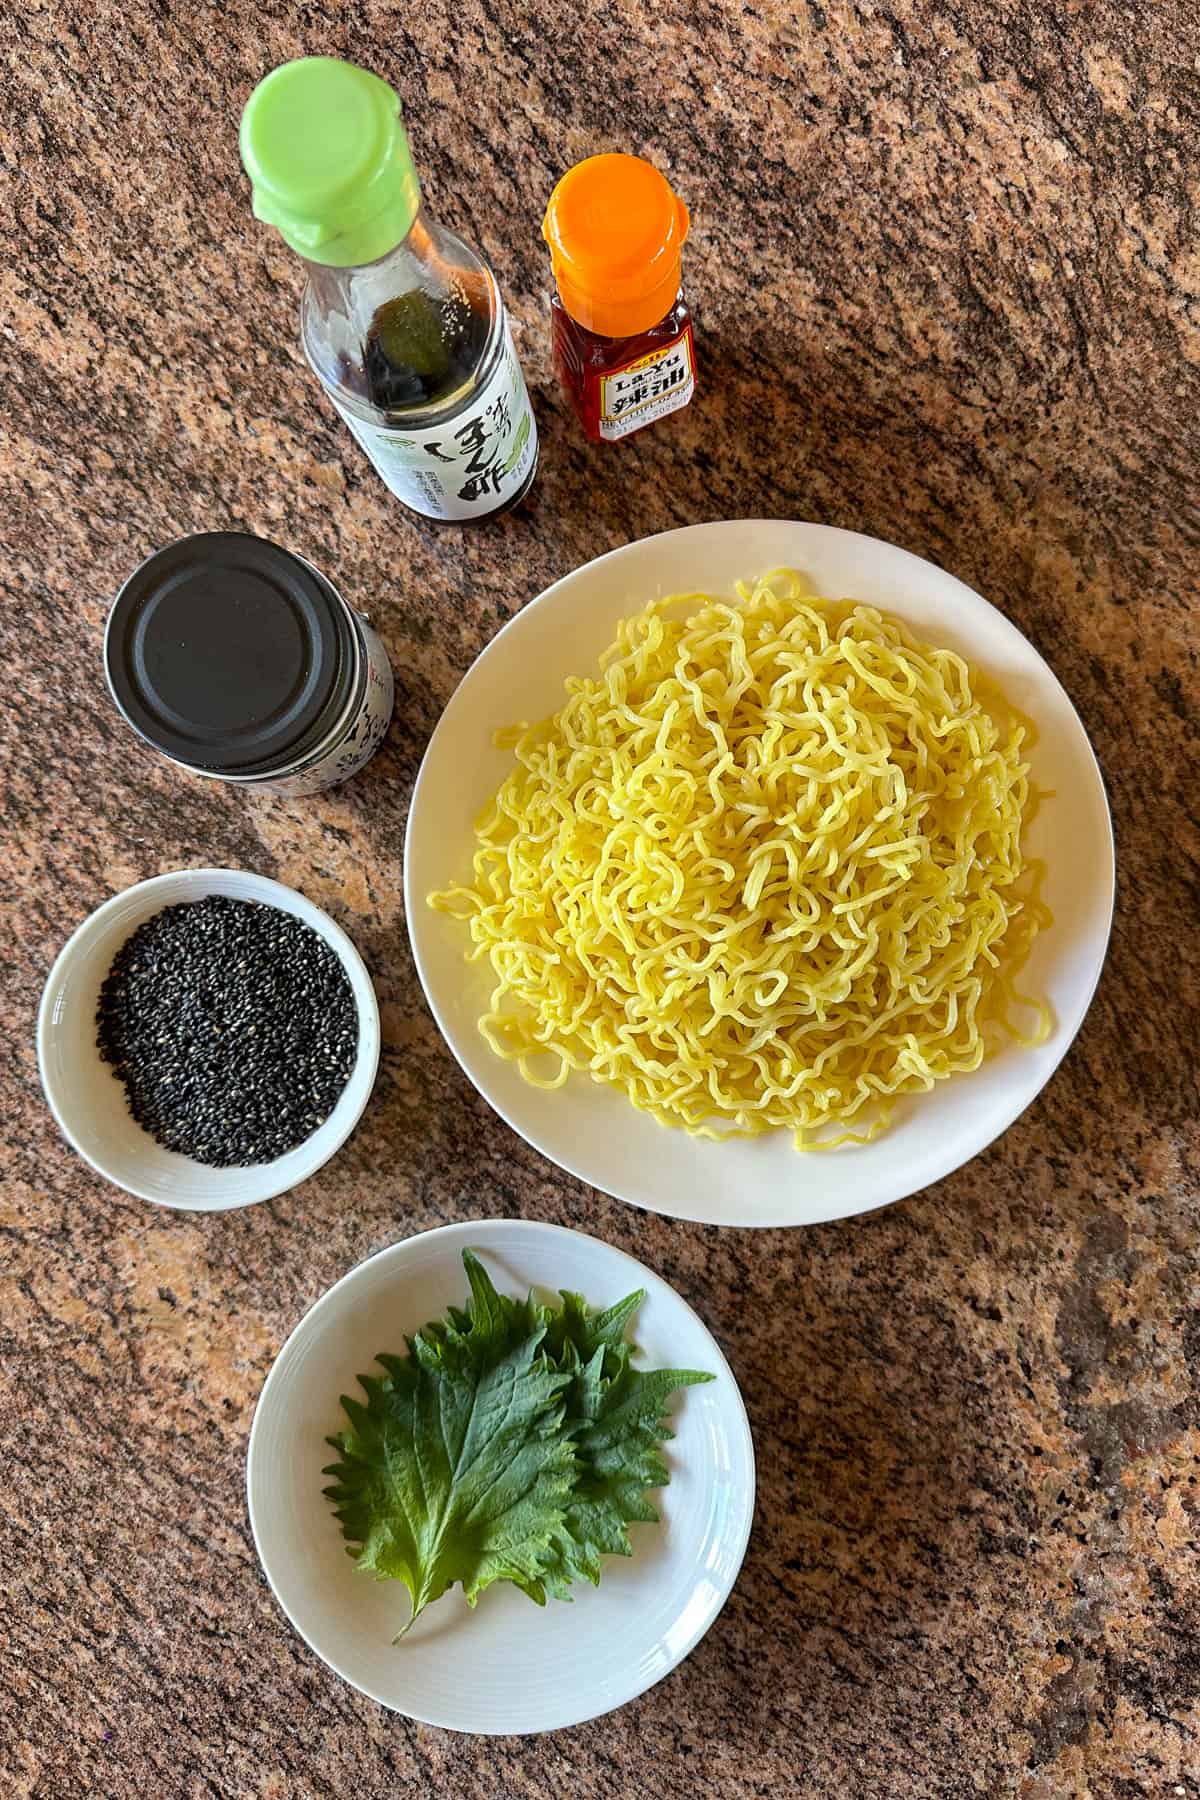 Ingredients for making Black Sesame Noodles.